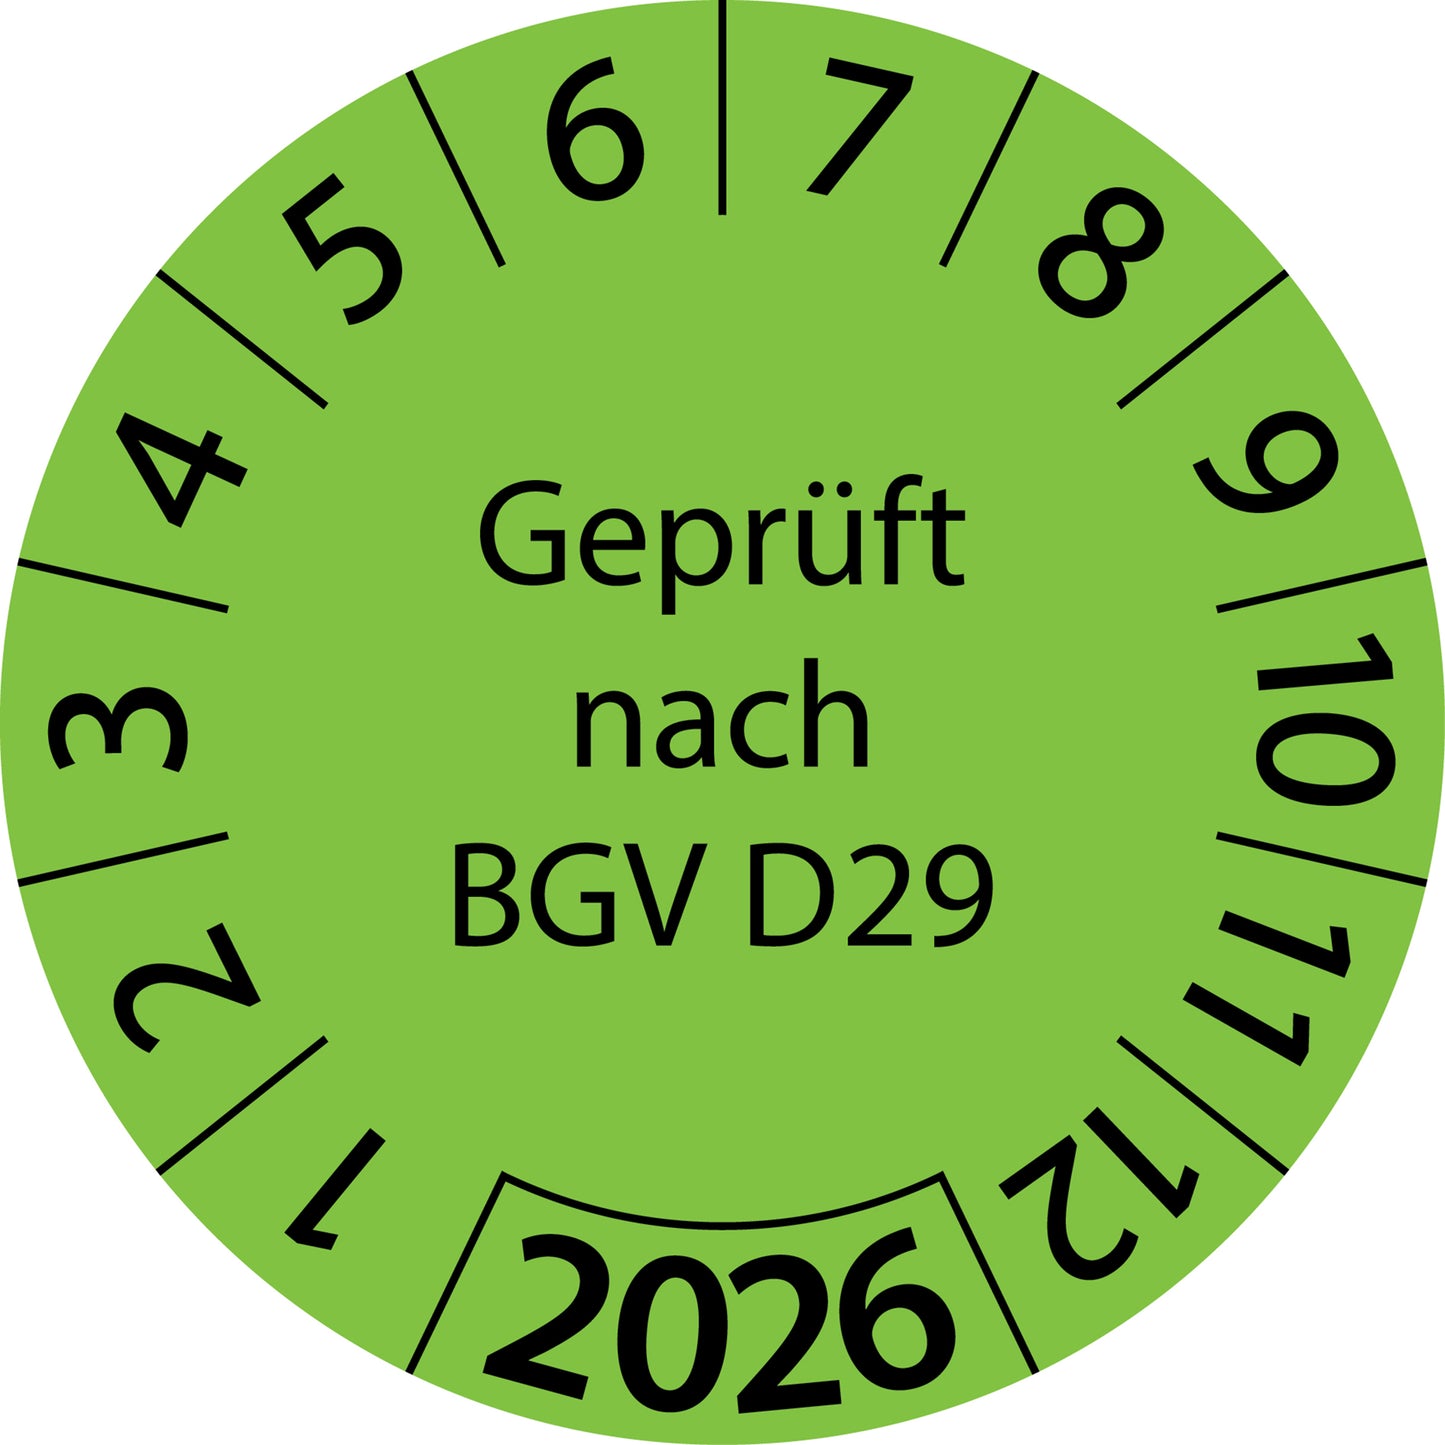 Einjahresprüfetiketten, Geprüft nach BGV D29, Startjahr: 2026 aus Papier oder Plastik